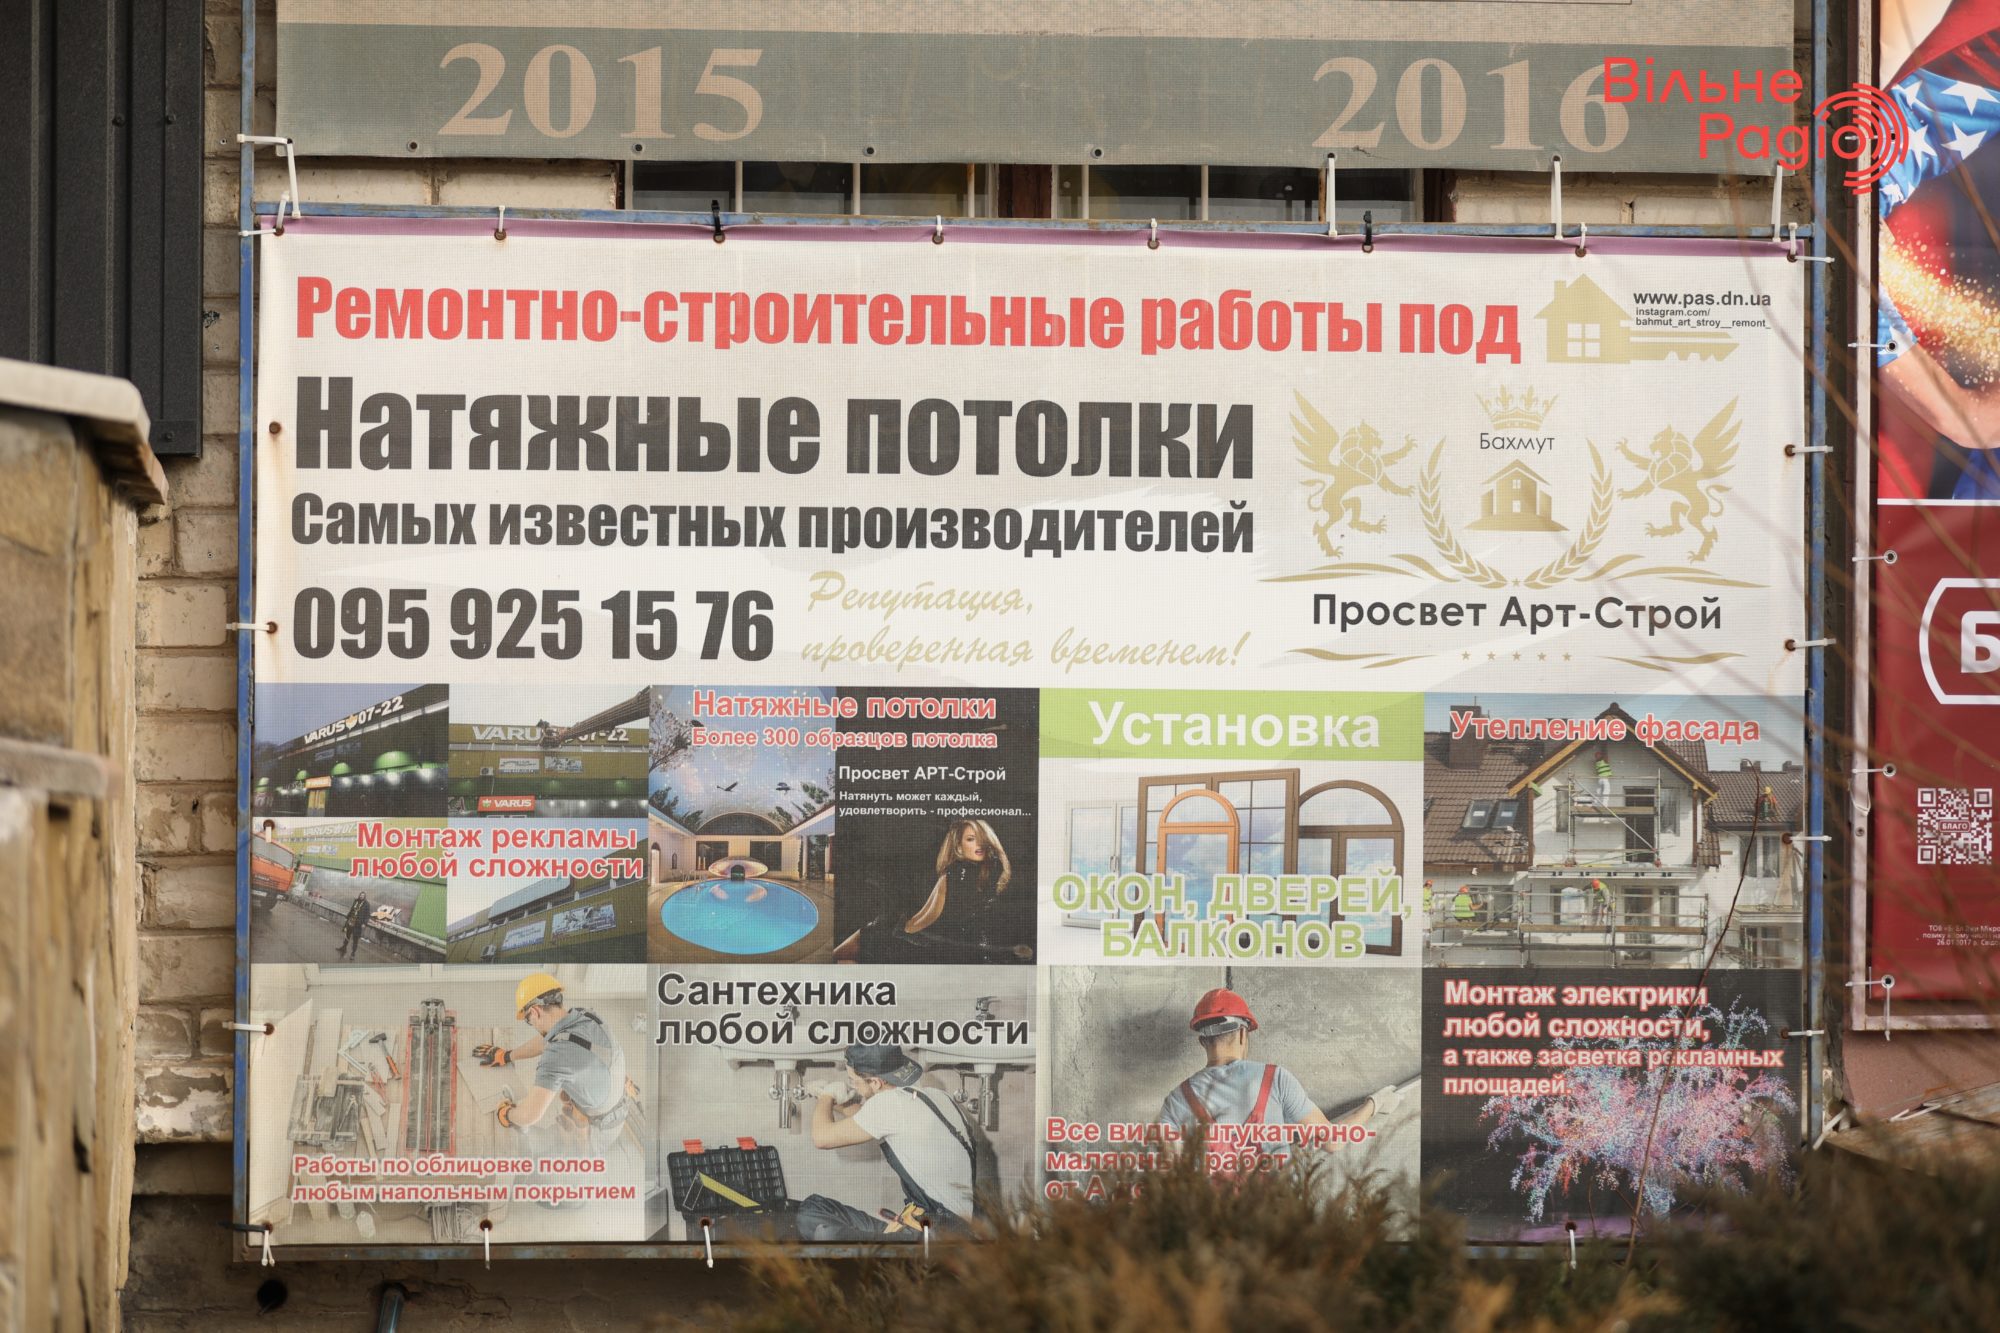 Глав 7 громад Донбасса просят убрать рекламу, которая нарушает “языковой” закон. Какая ситуация в Бахмуте”(ФОТО) 1